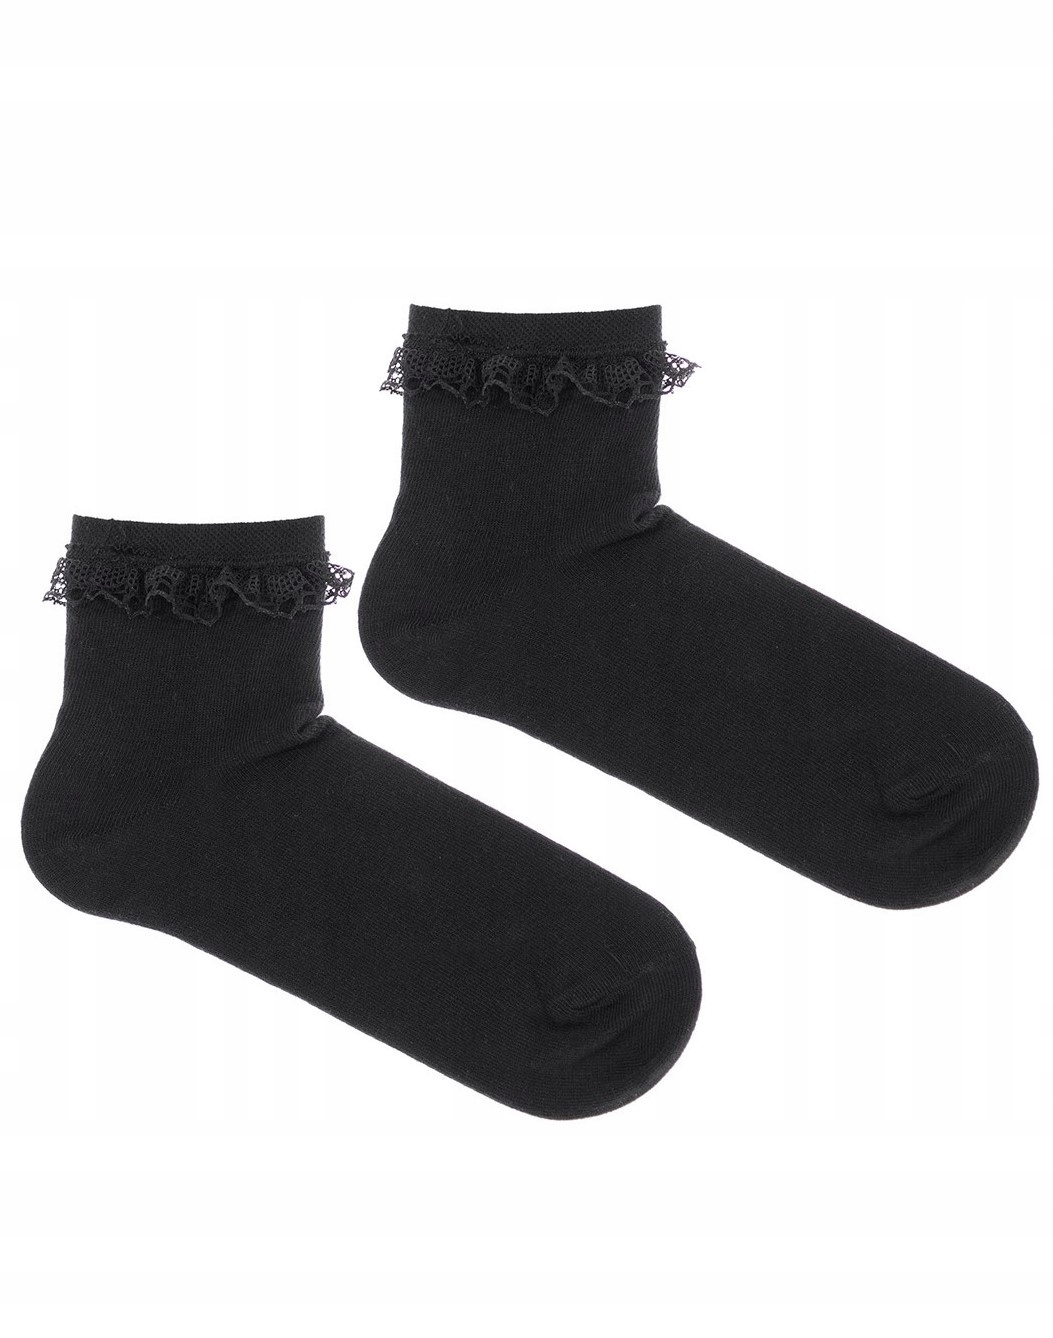 Ponožky dámske Milena čierne s čipkou 37-41